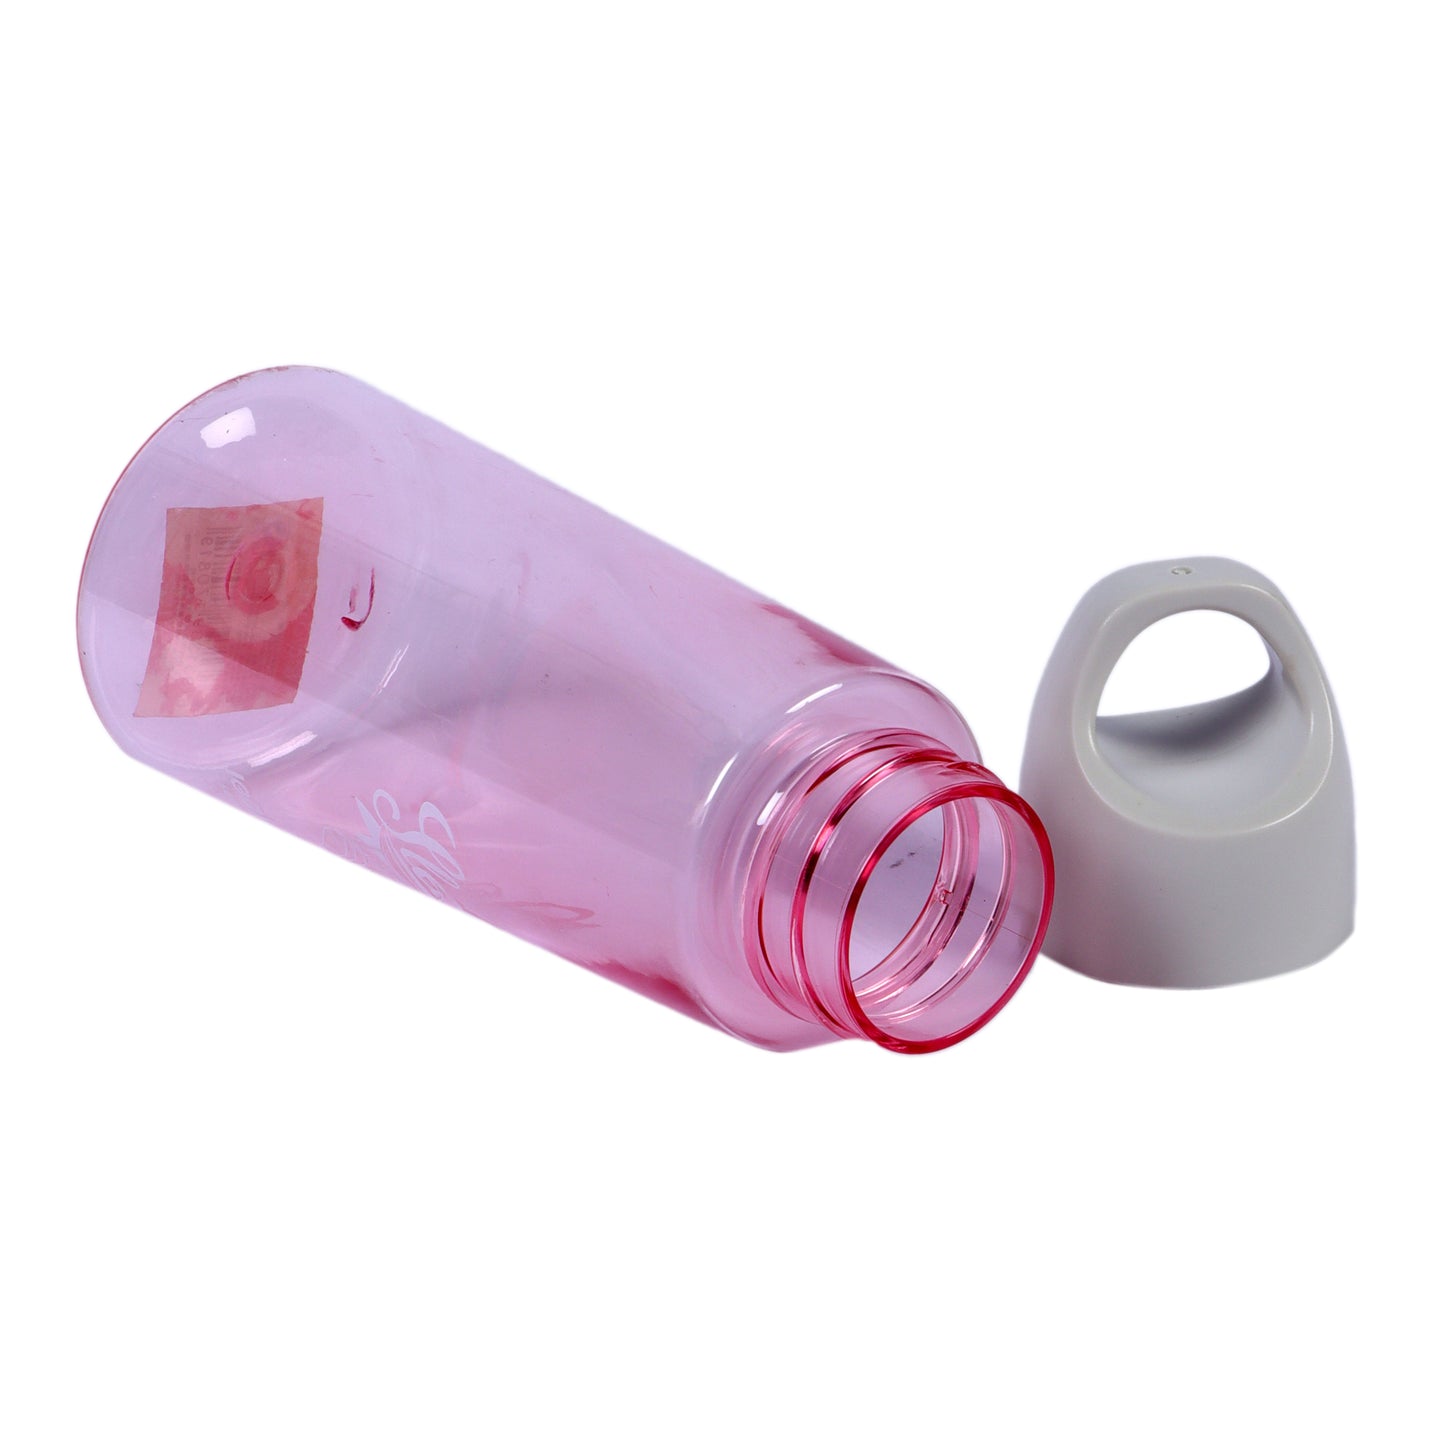 Pink Water Bottle